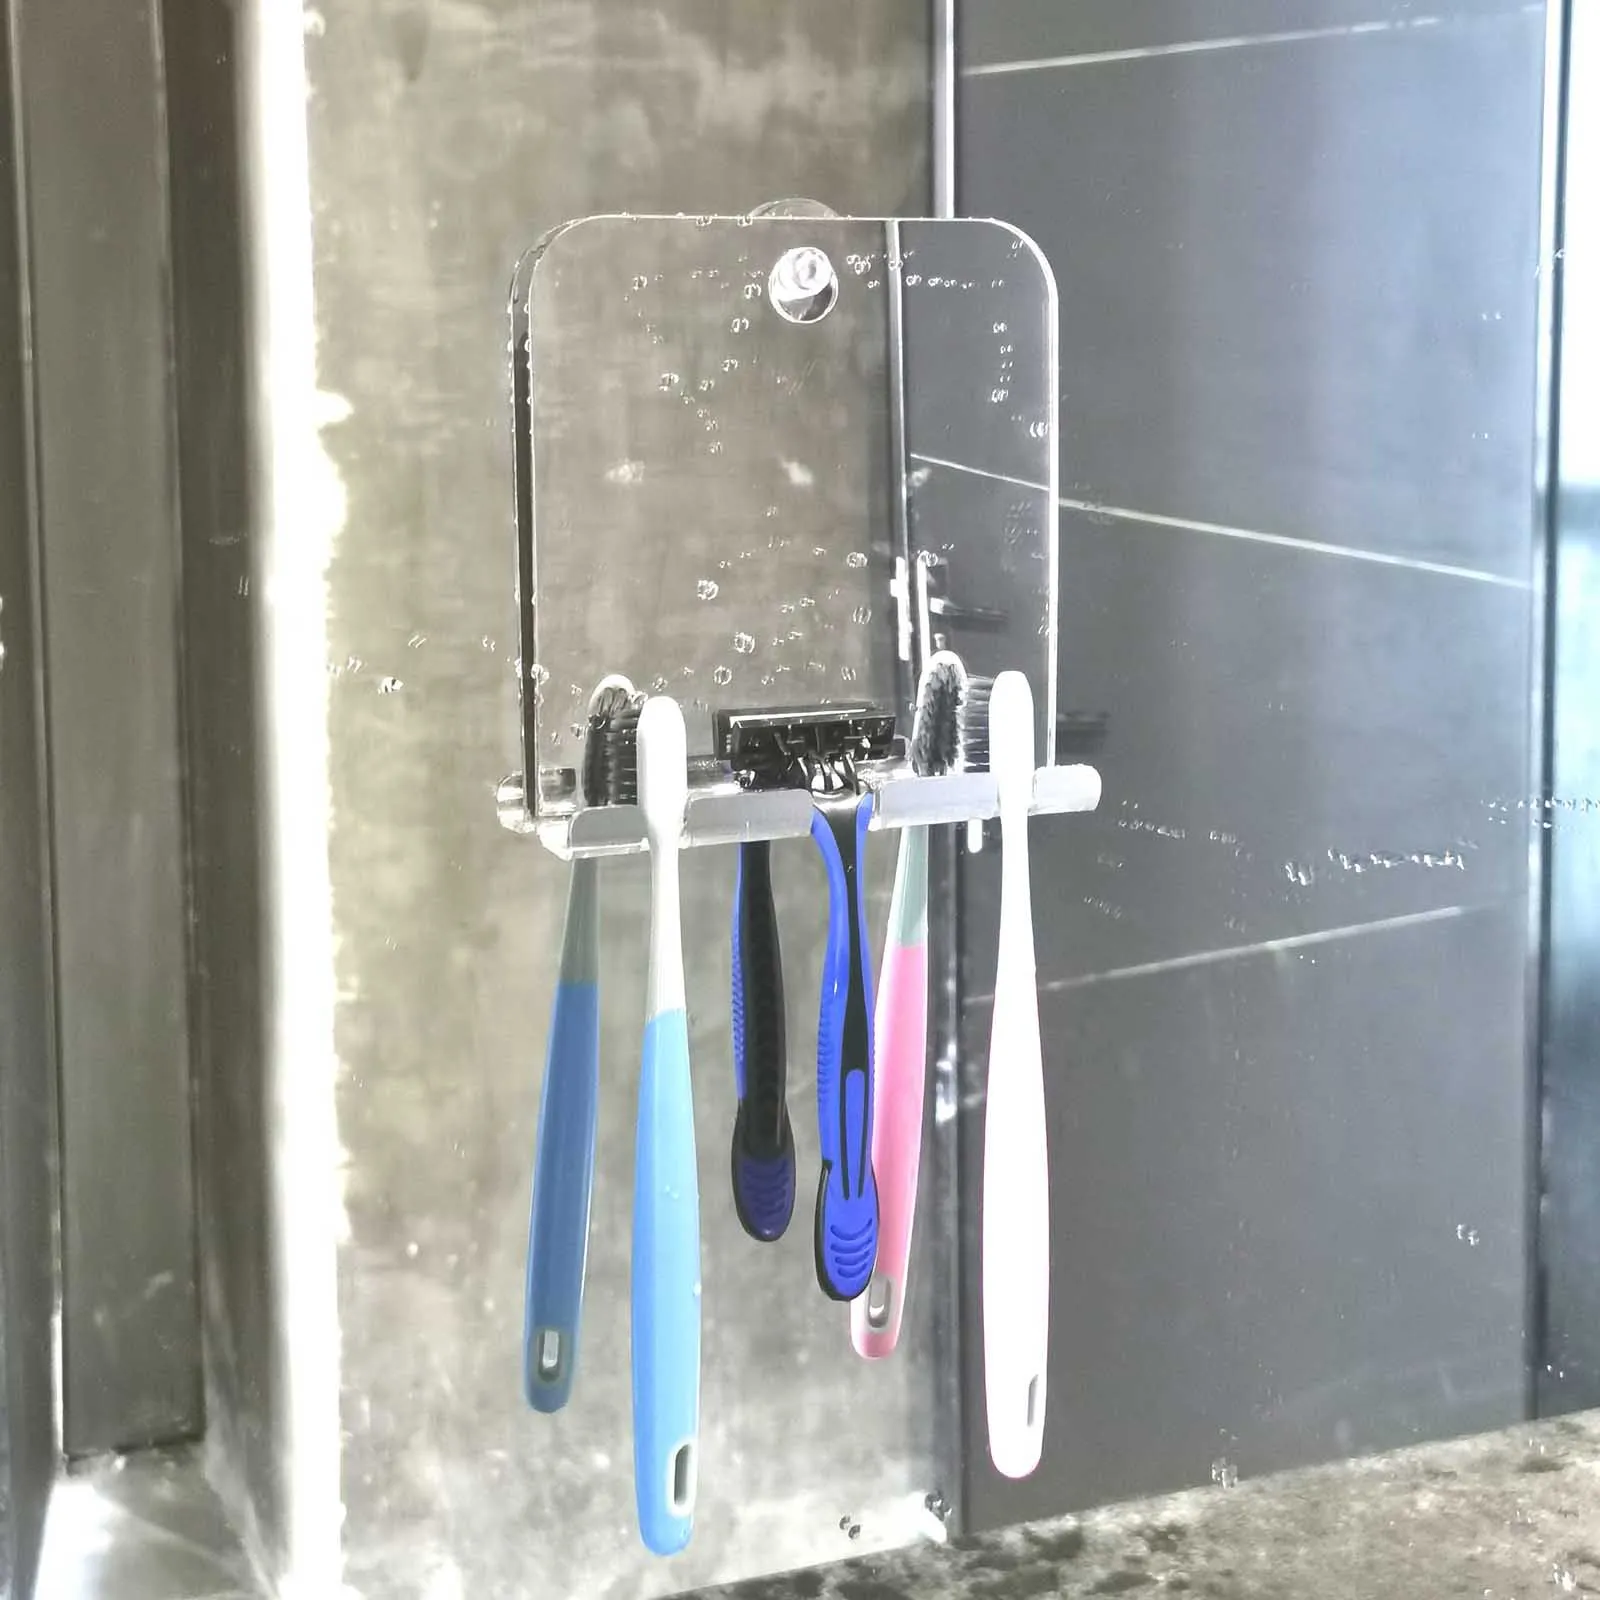 Acrylic Anti Fog Shower Mirror Bathroom Fogless Fog Free Mirror Washroom Travel For Man Shaving Mirror 13.8*13cm